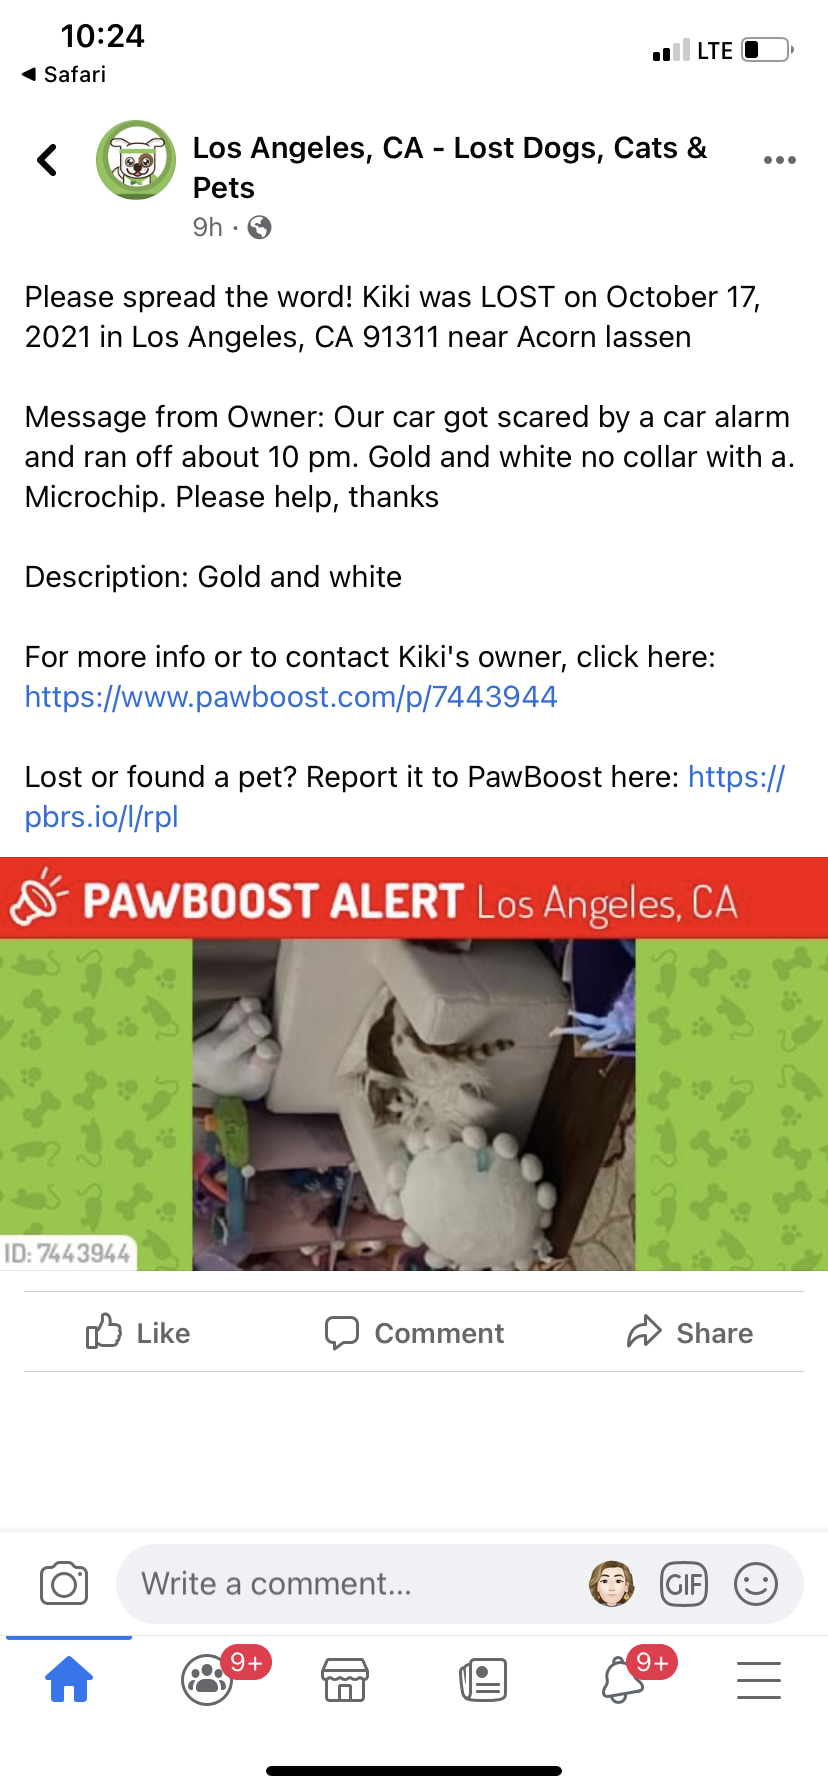 Image of Kiki, Lost Cat